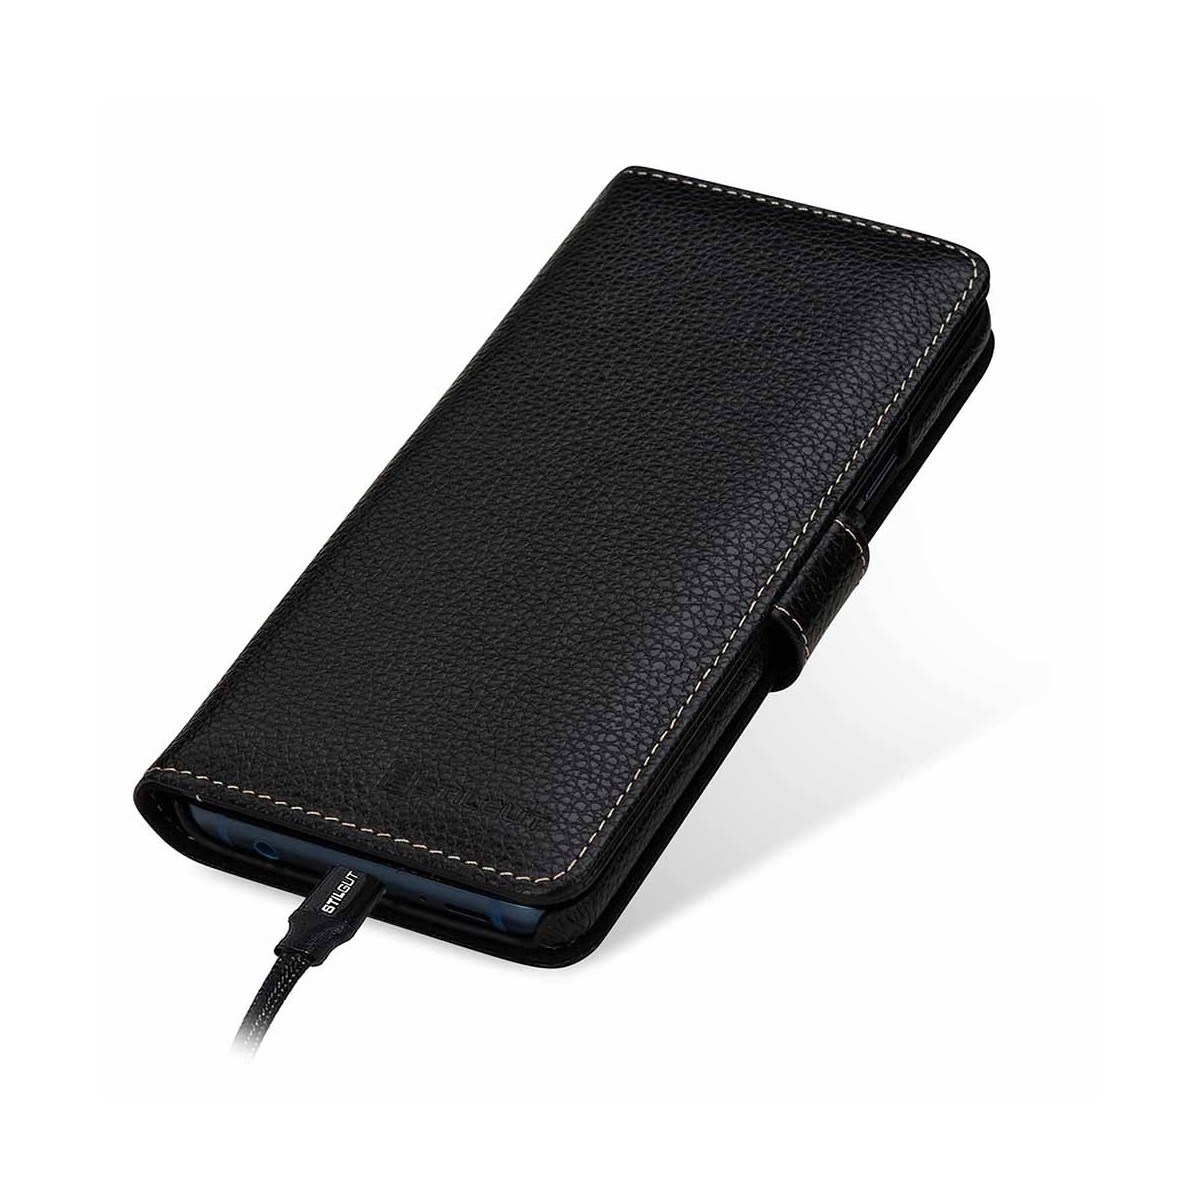 Etui Galaxy S9 porte-cartes grainé noir en cuir véritable - Stilgut